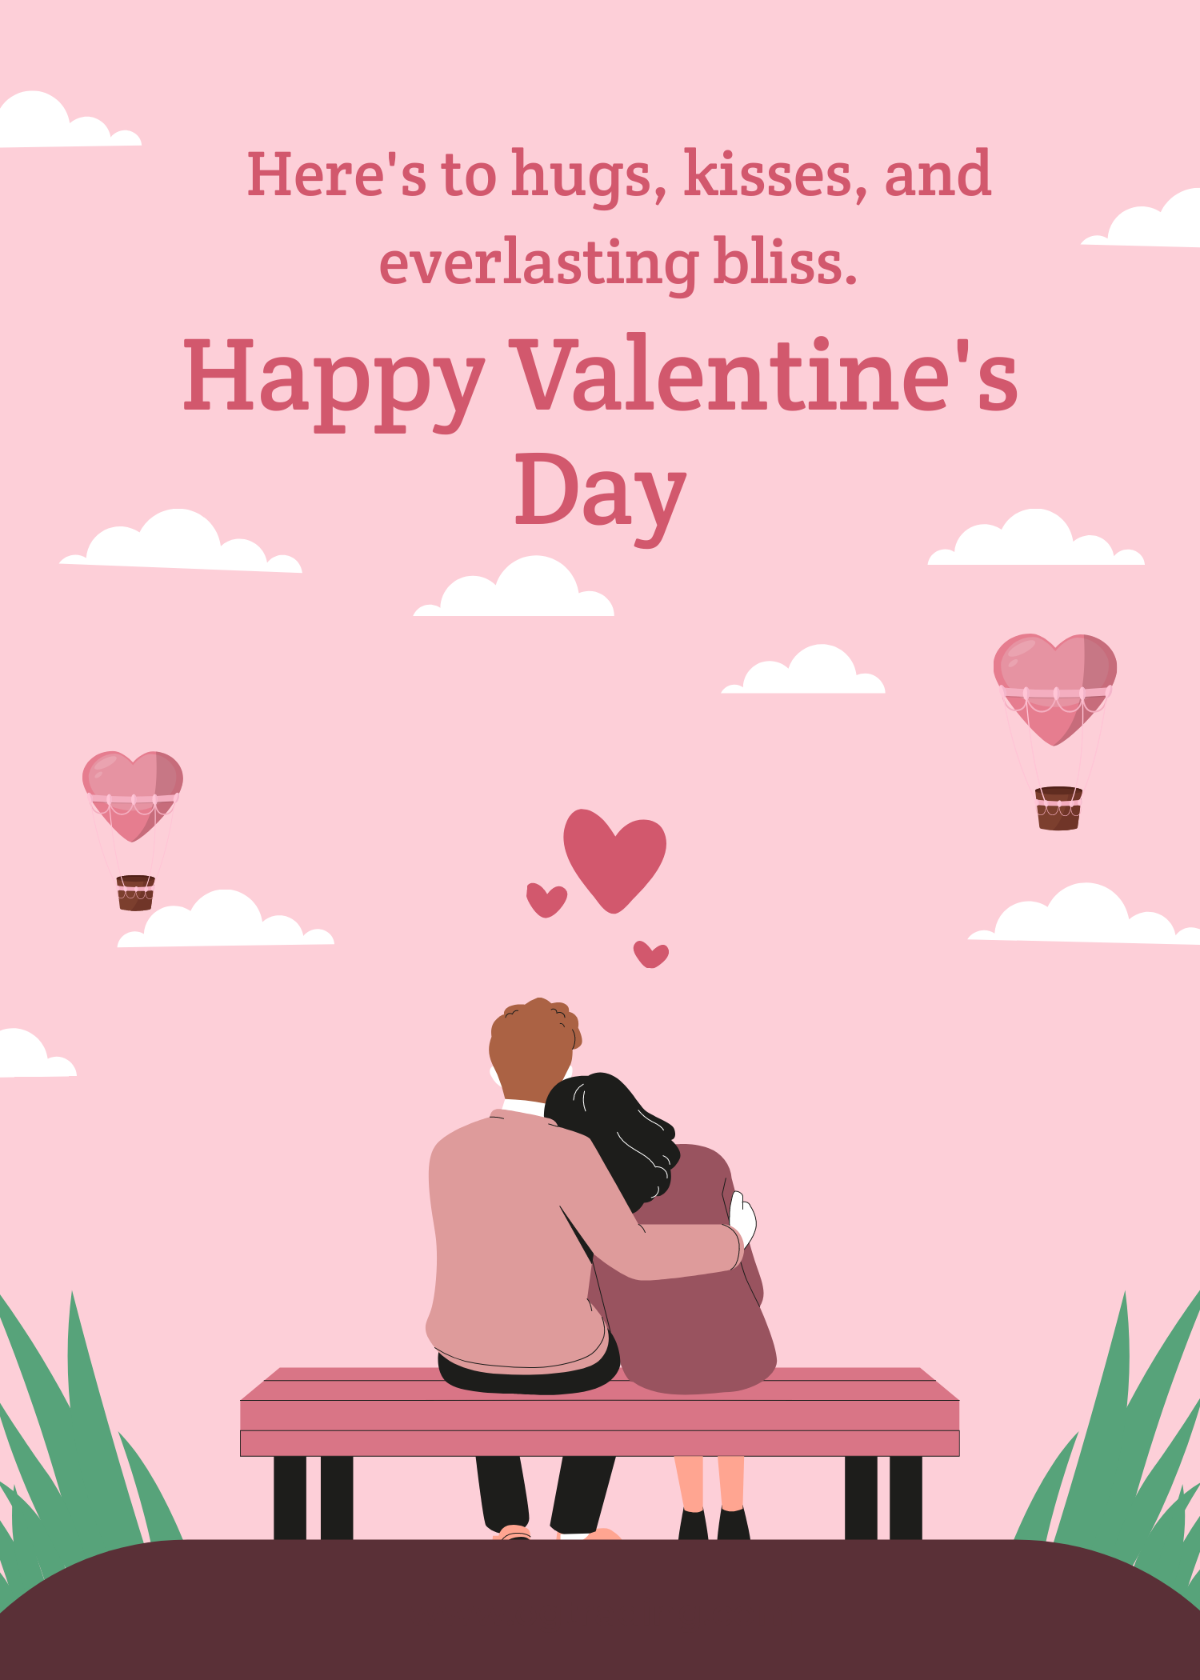 Happy Valentine's Day Message Wishes